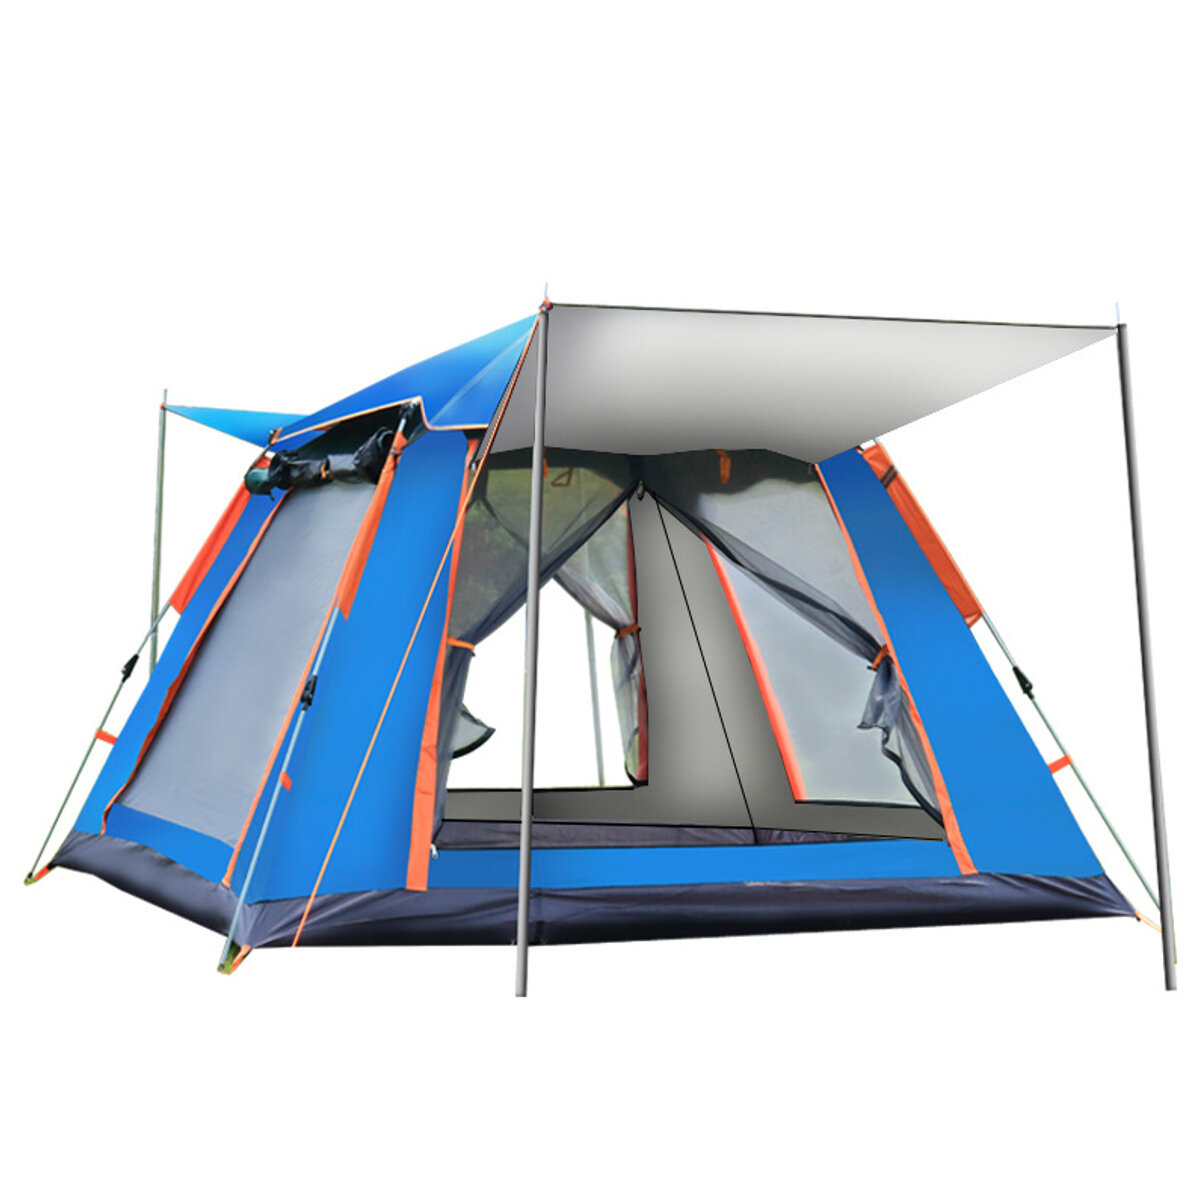 Tente de montage entièrement automatique pour 4-5 personnes UV Tente de camping en plein air pour pique-nique en famille protégée contre la pluie